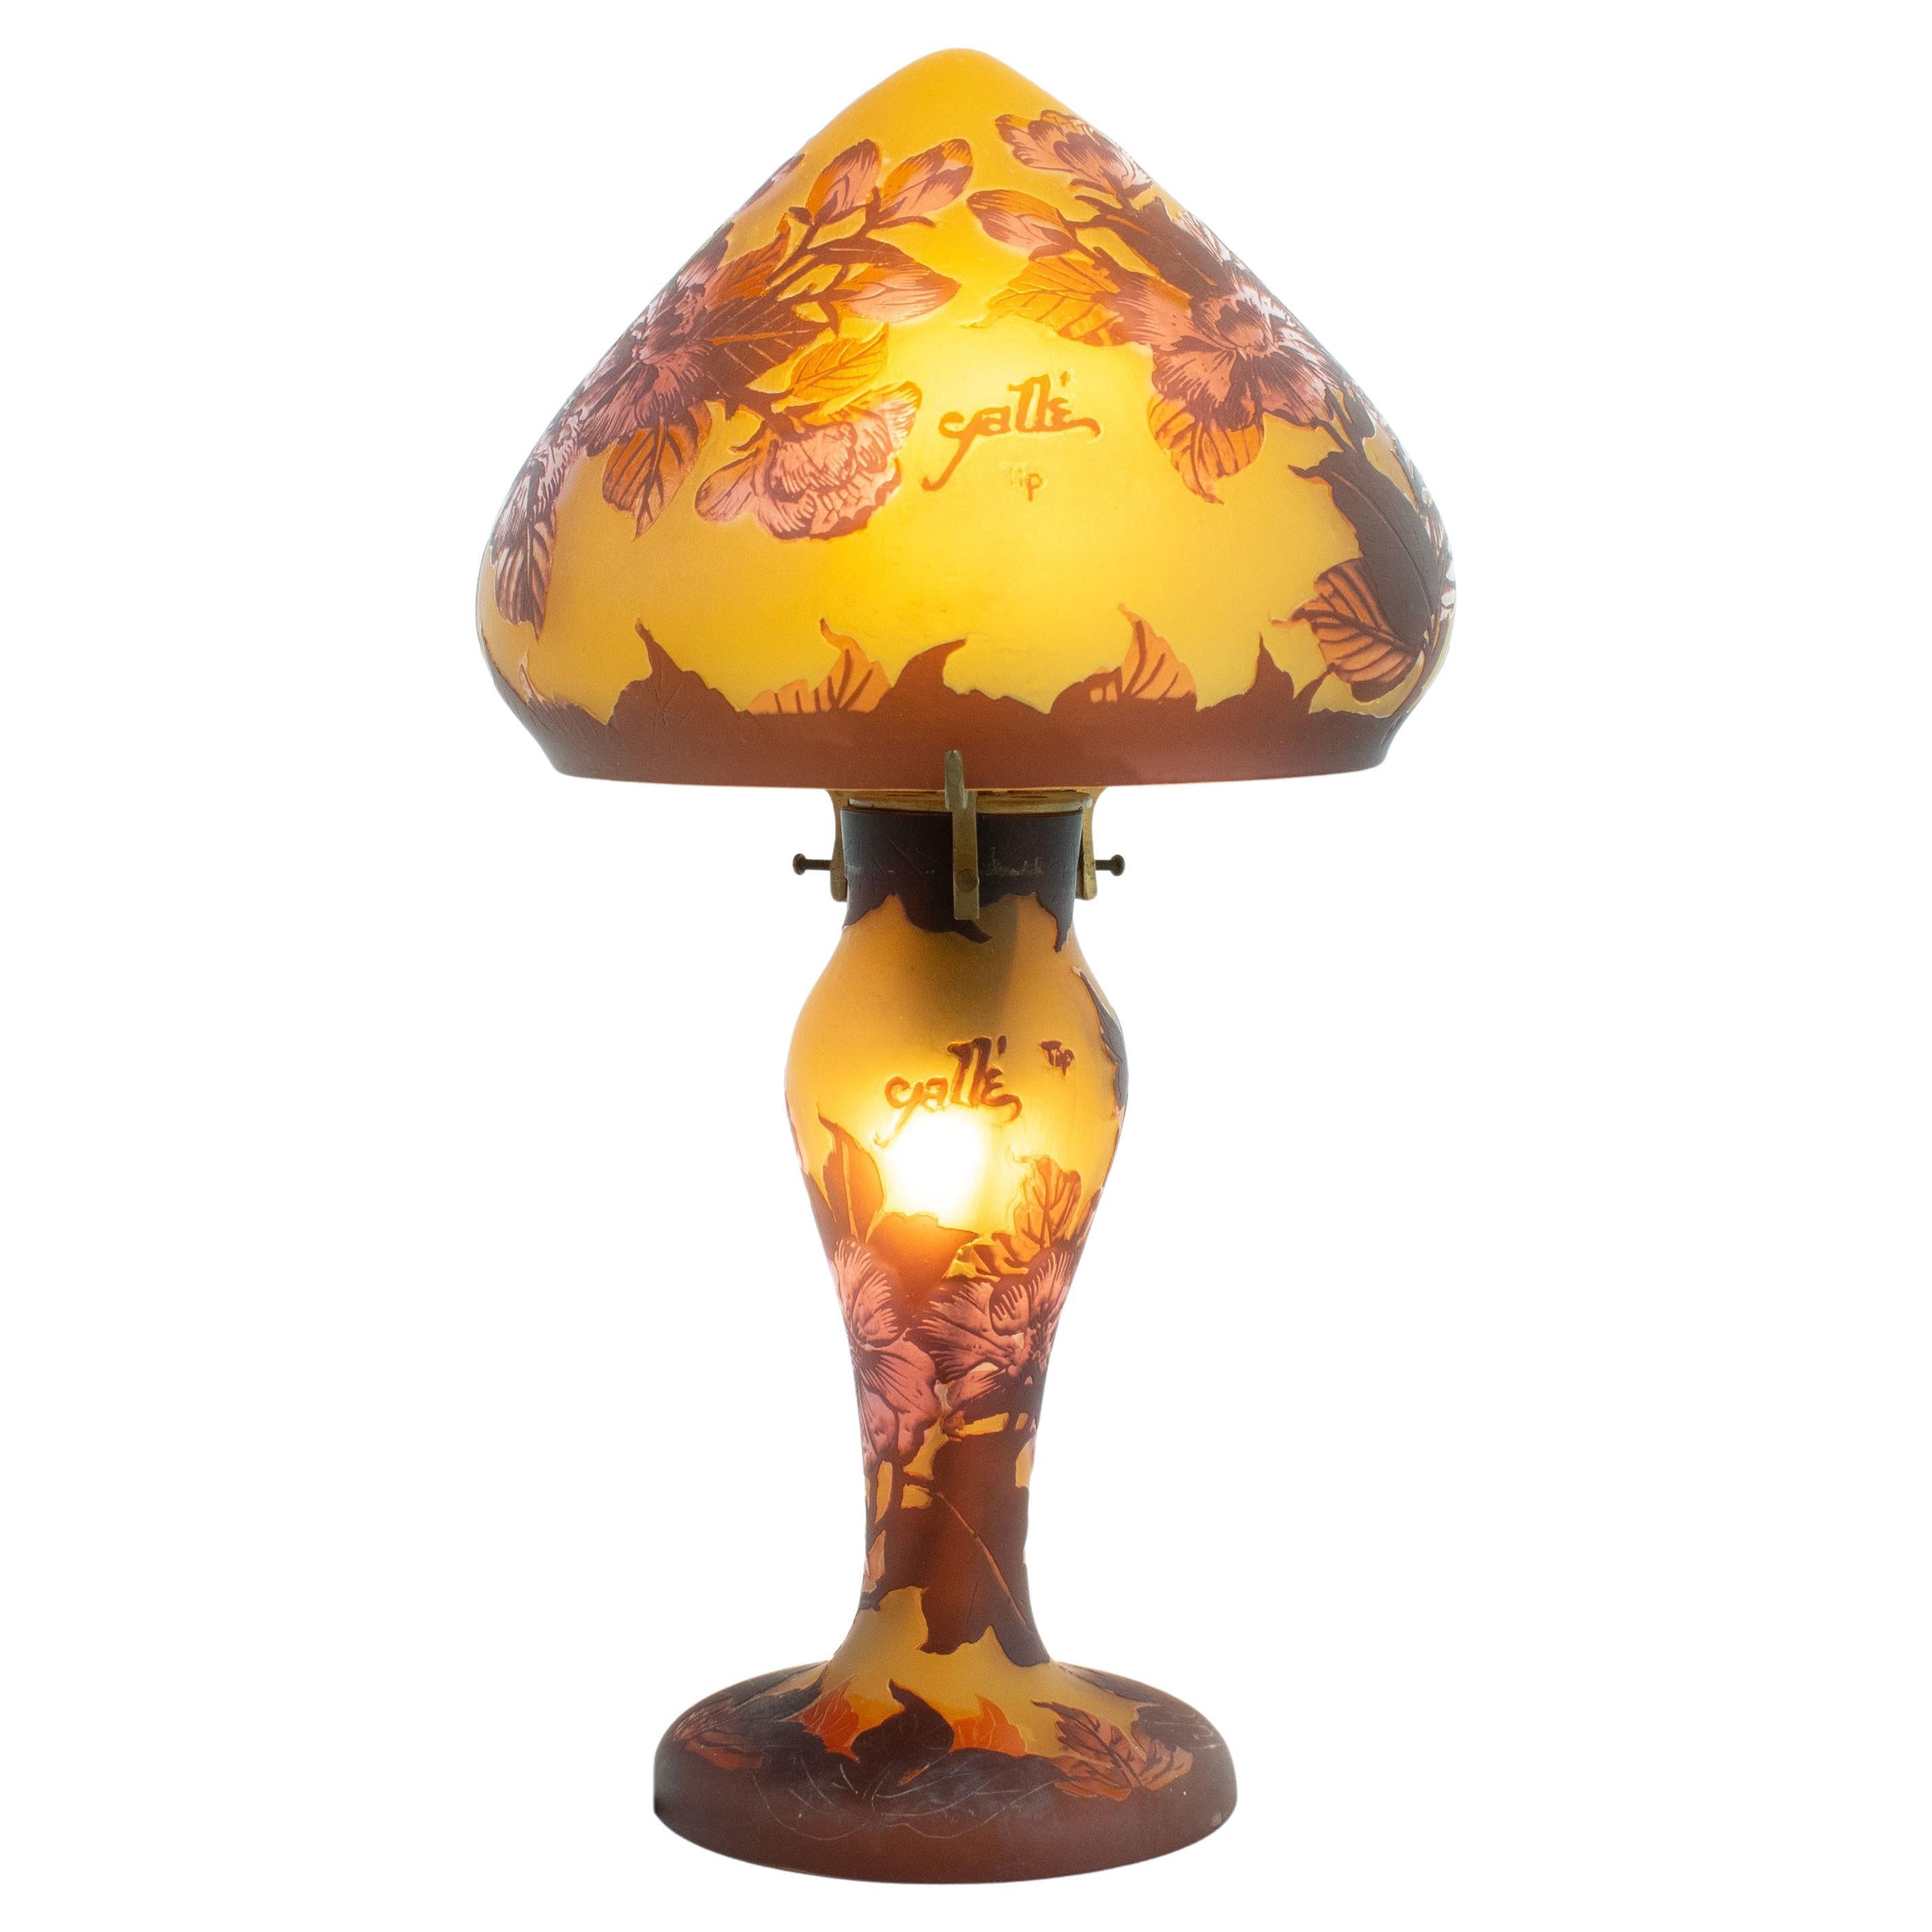 Gallè Tip - Art Nouveau Mushroom Lamp in multilayer glass